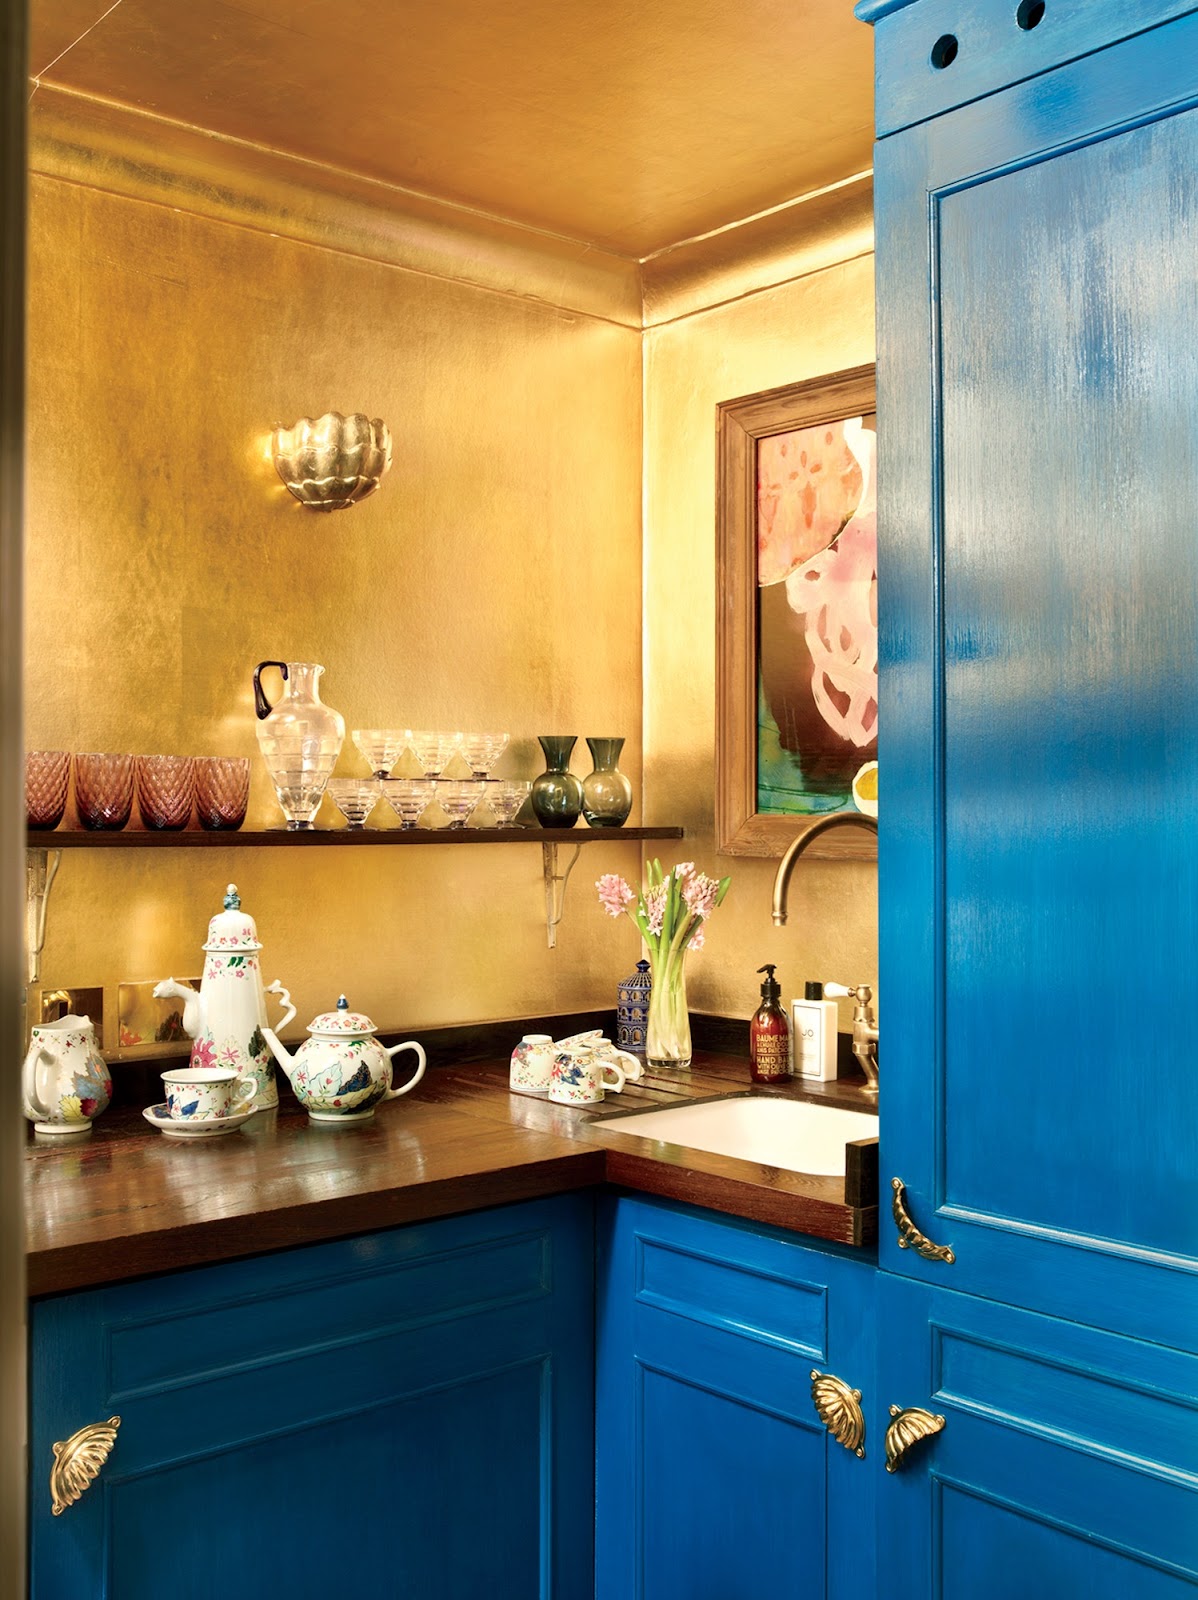 Best Kitchens in Vogue | Vogue